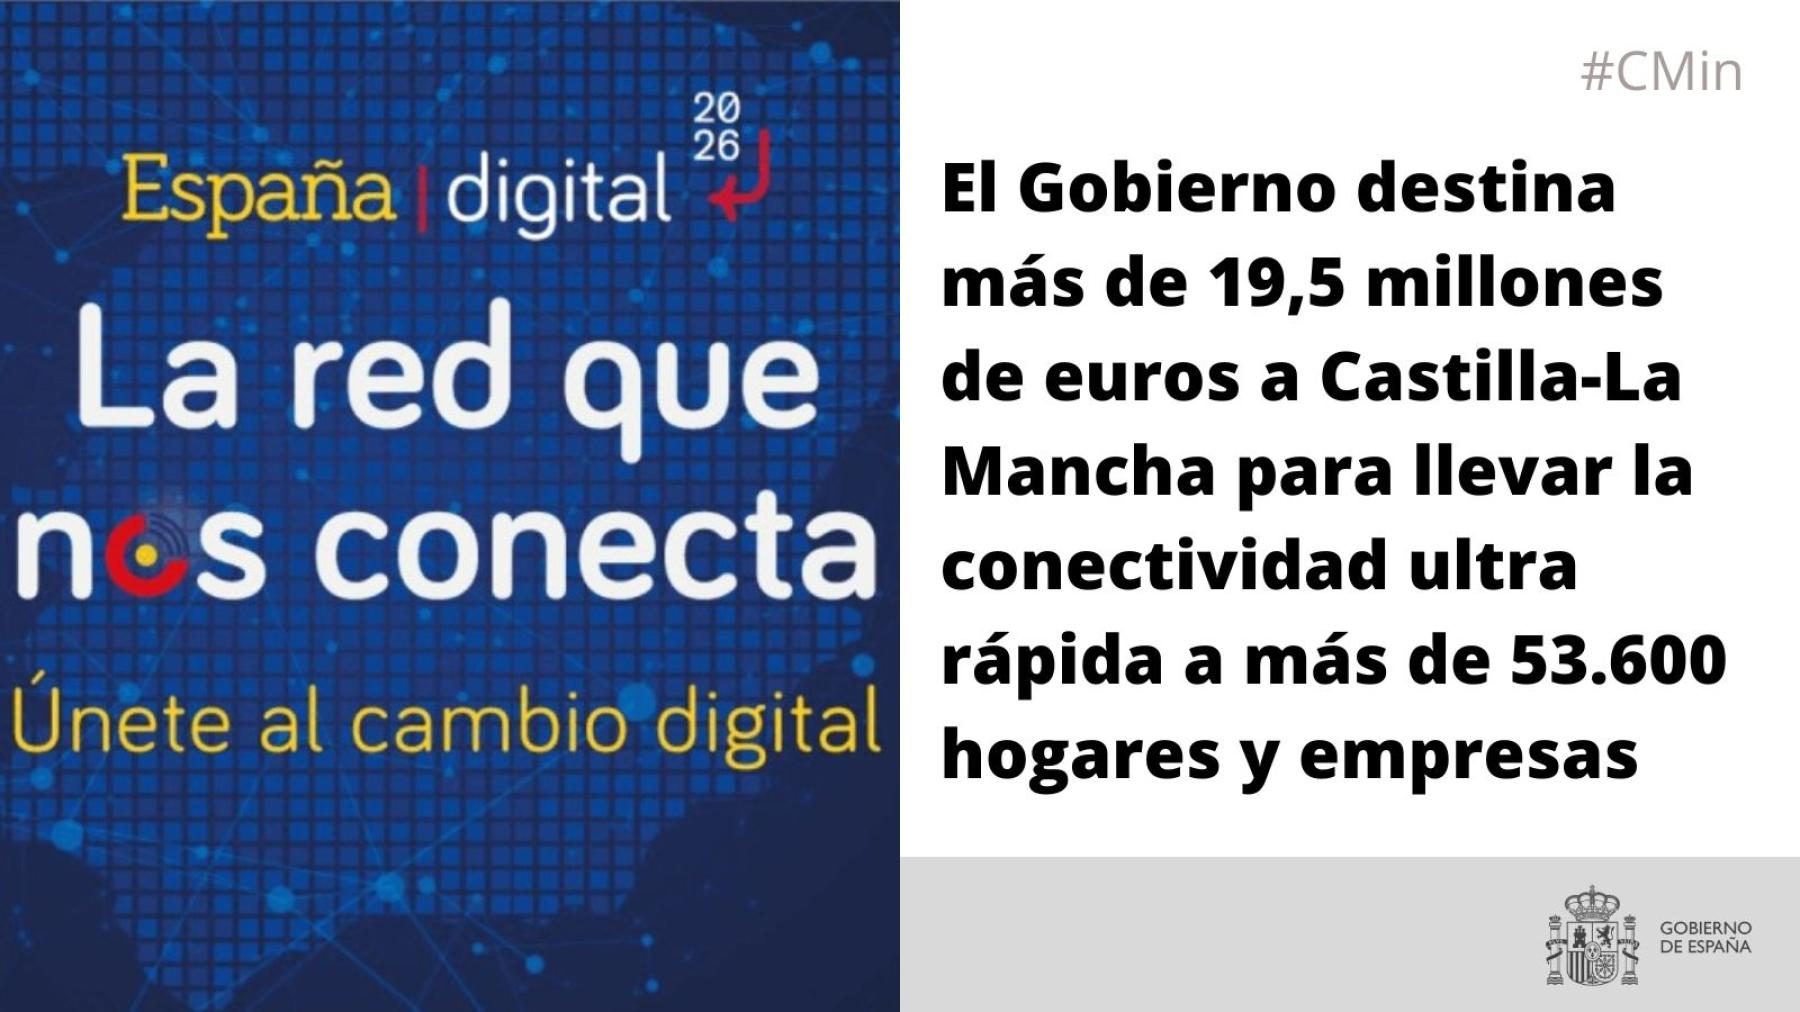 El Gobierno destina más de 19,5 millones de euros a Castilla-La Mancha para llevar la conectividad ultra rápida a más de 53.600 hogares y empresas<br/>